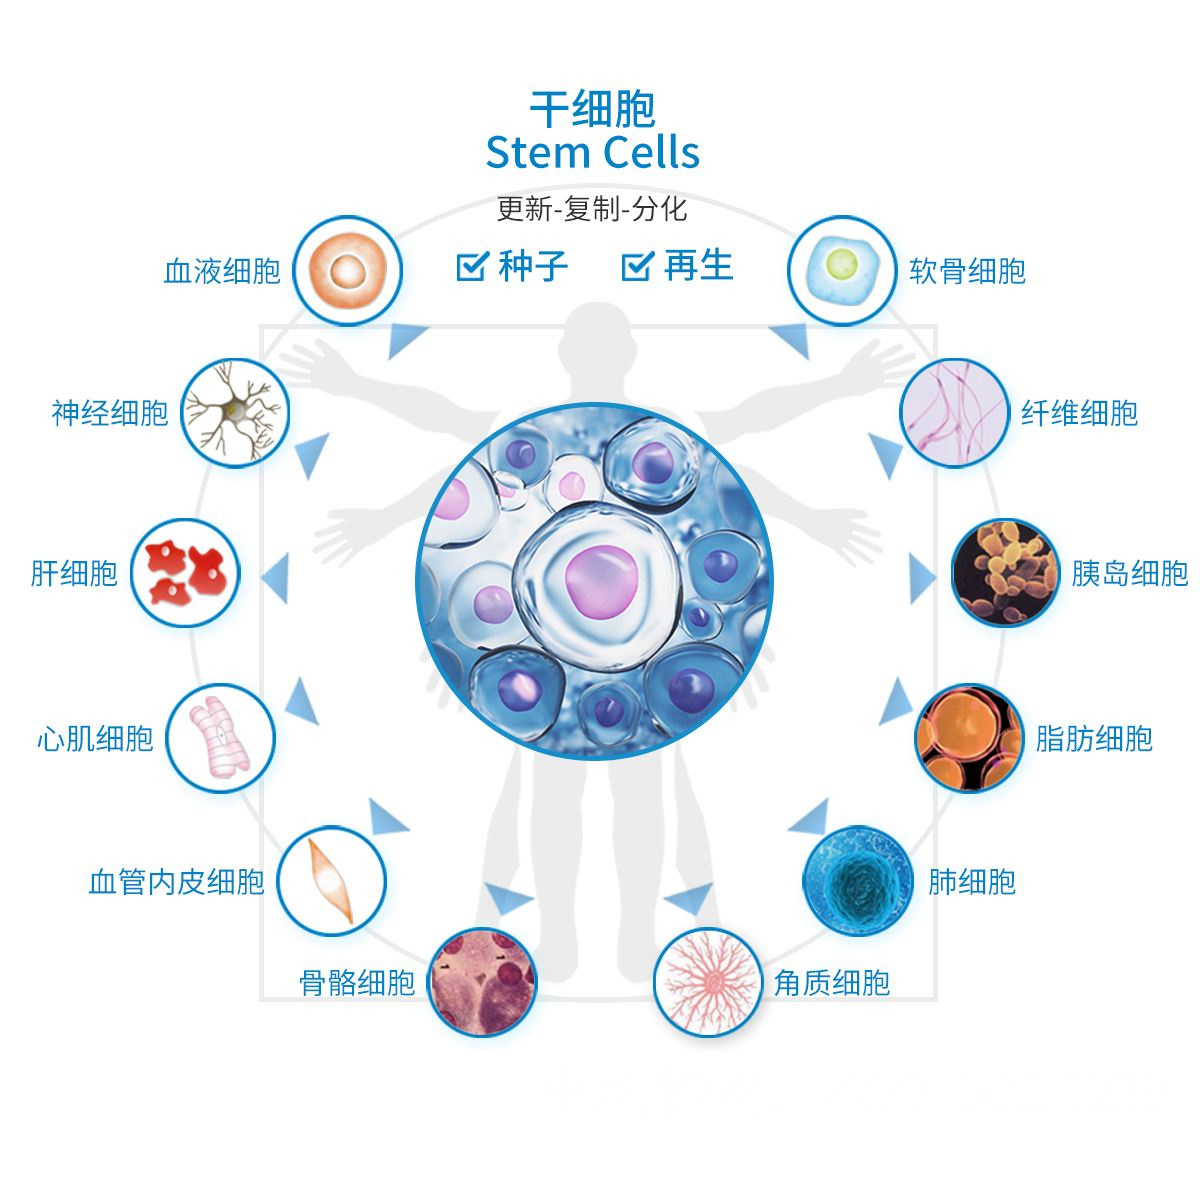 北京宫颈癌医院有生物免疫治疗方法吗